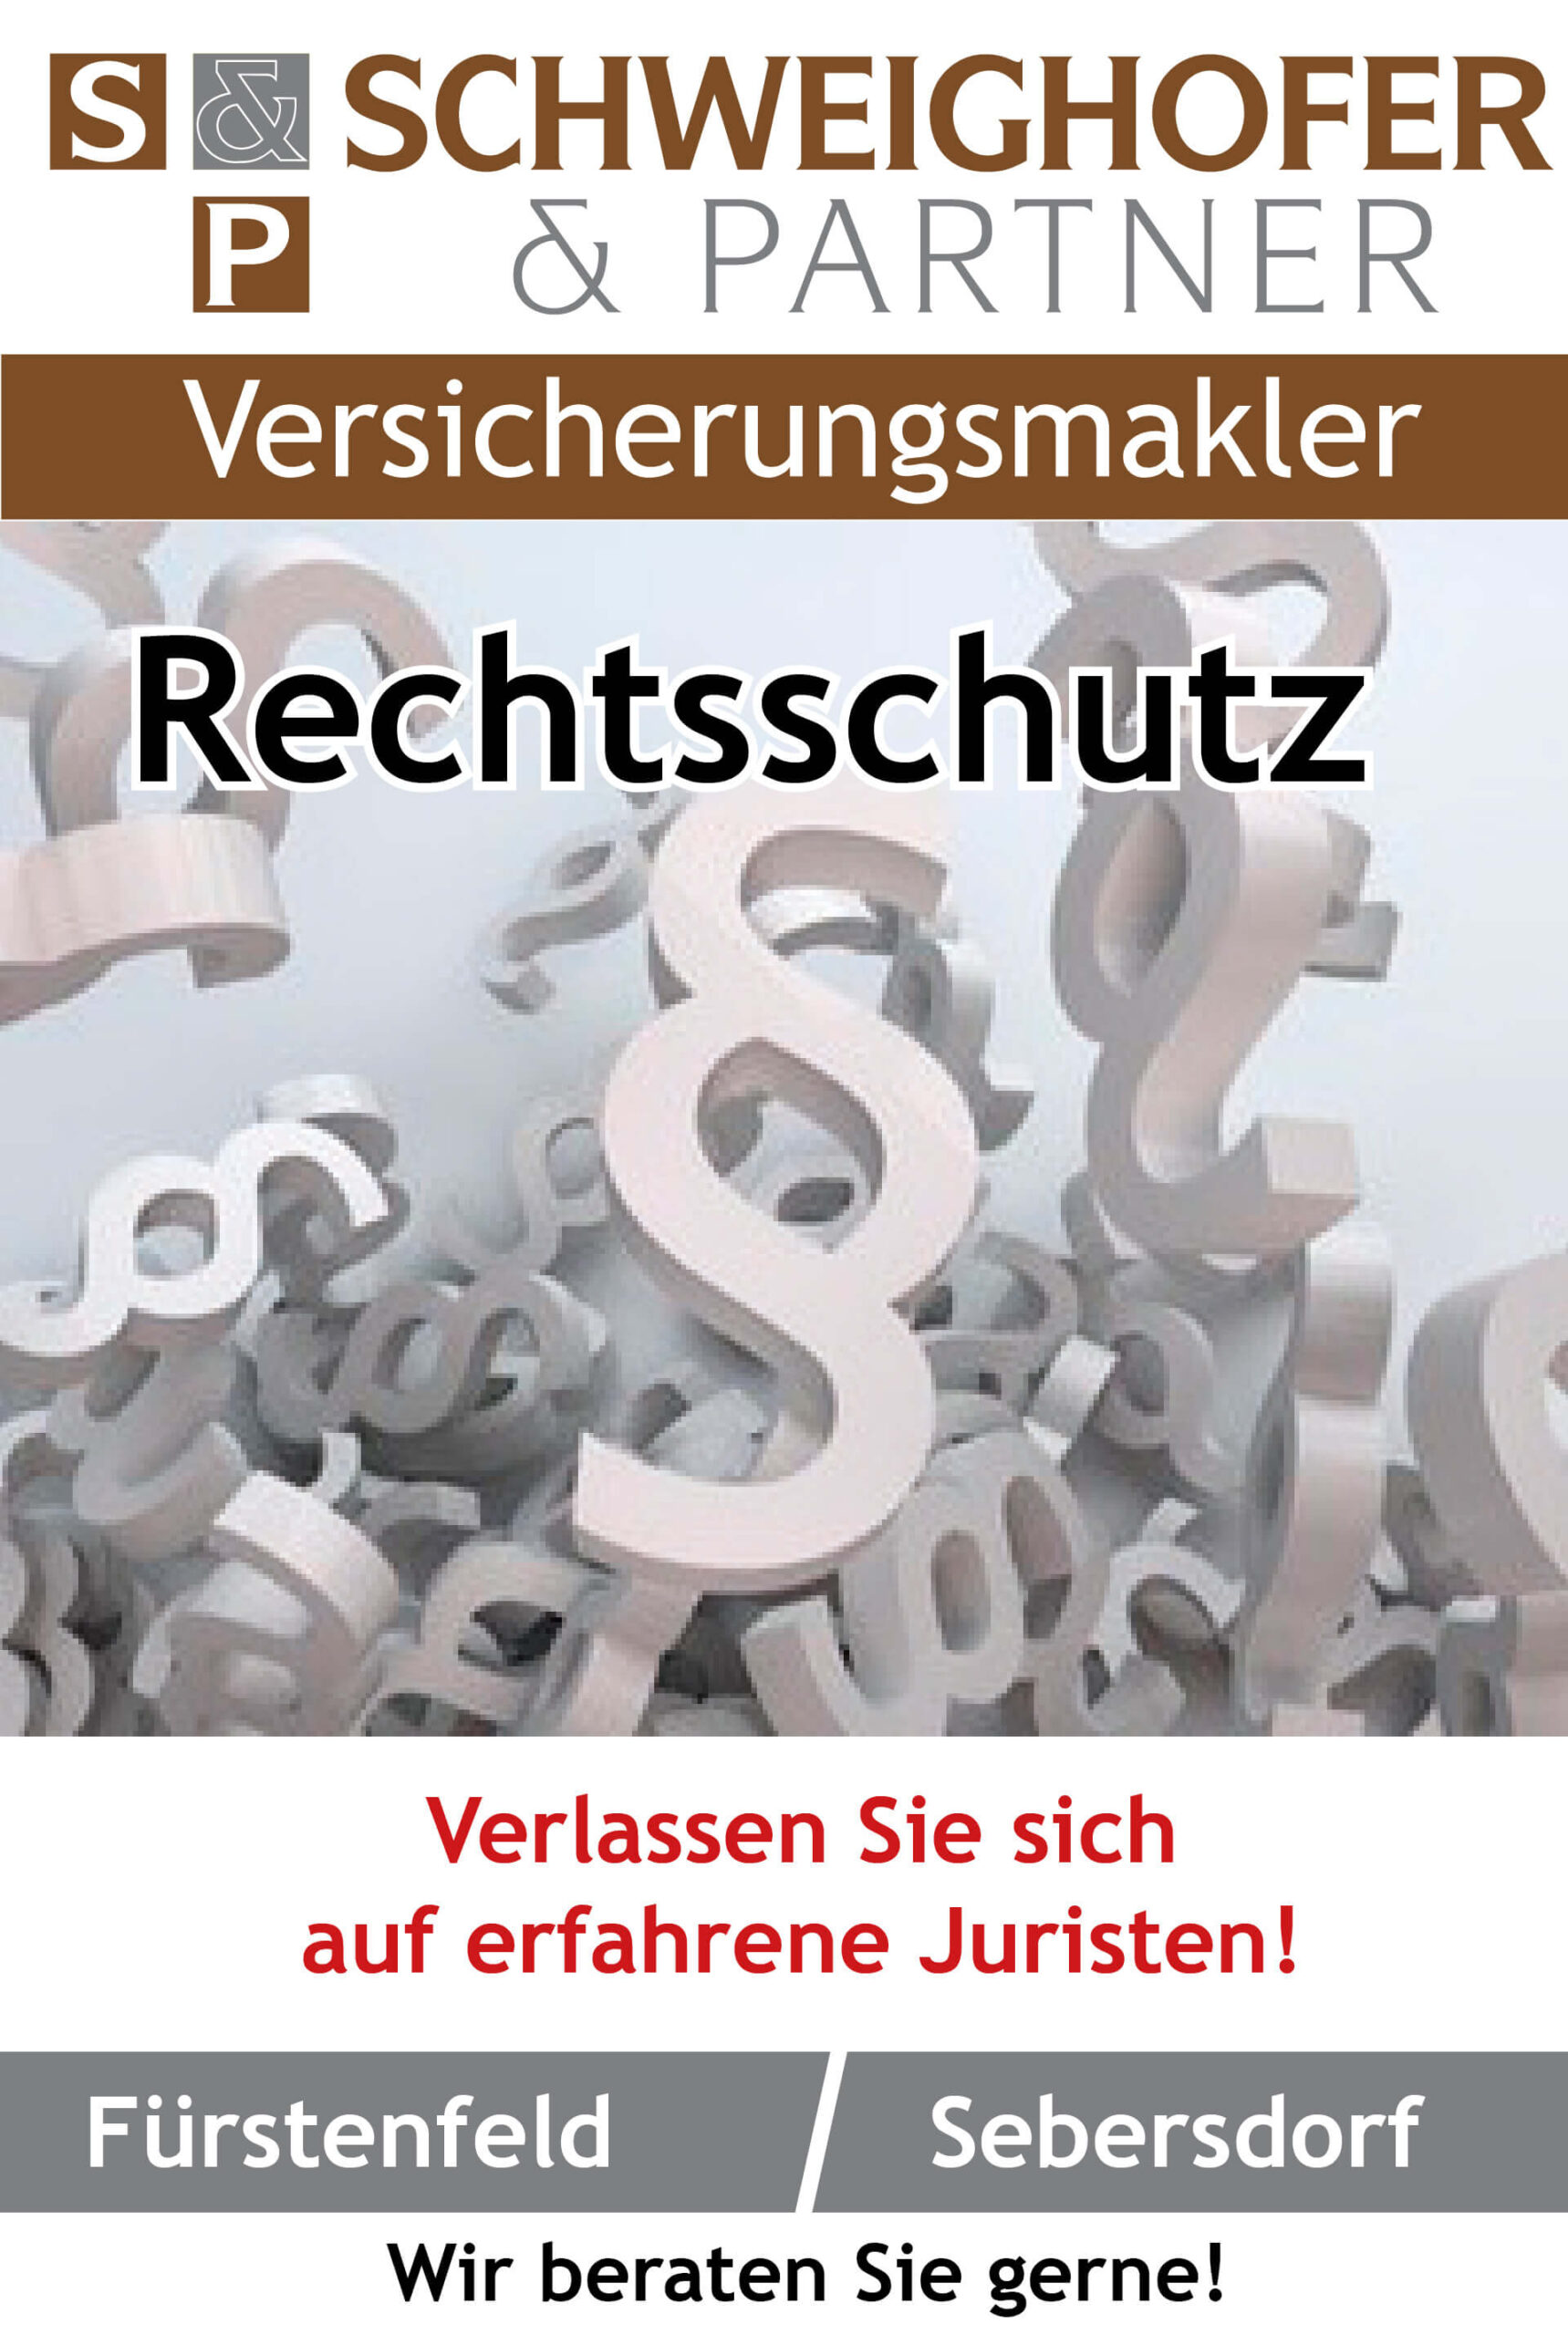 Schweighofer_Partner_08_Rechtschutz_VS